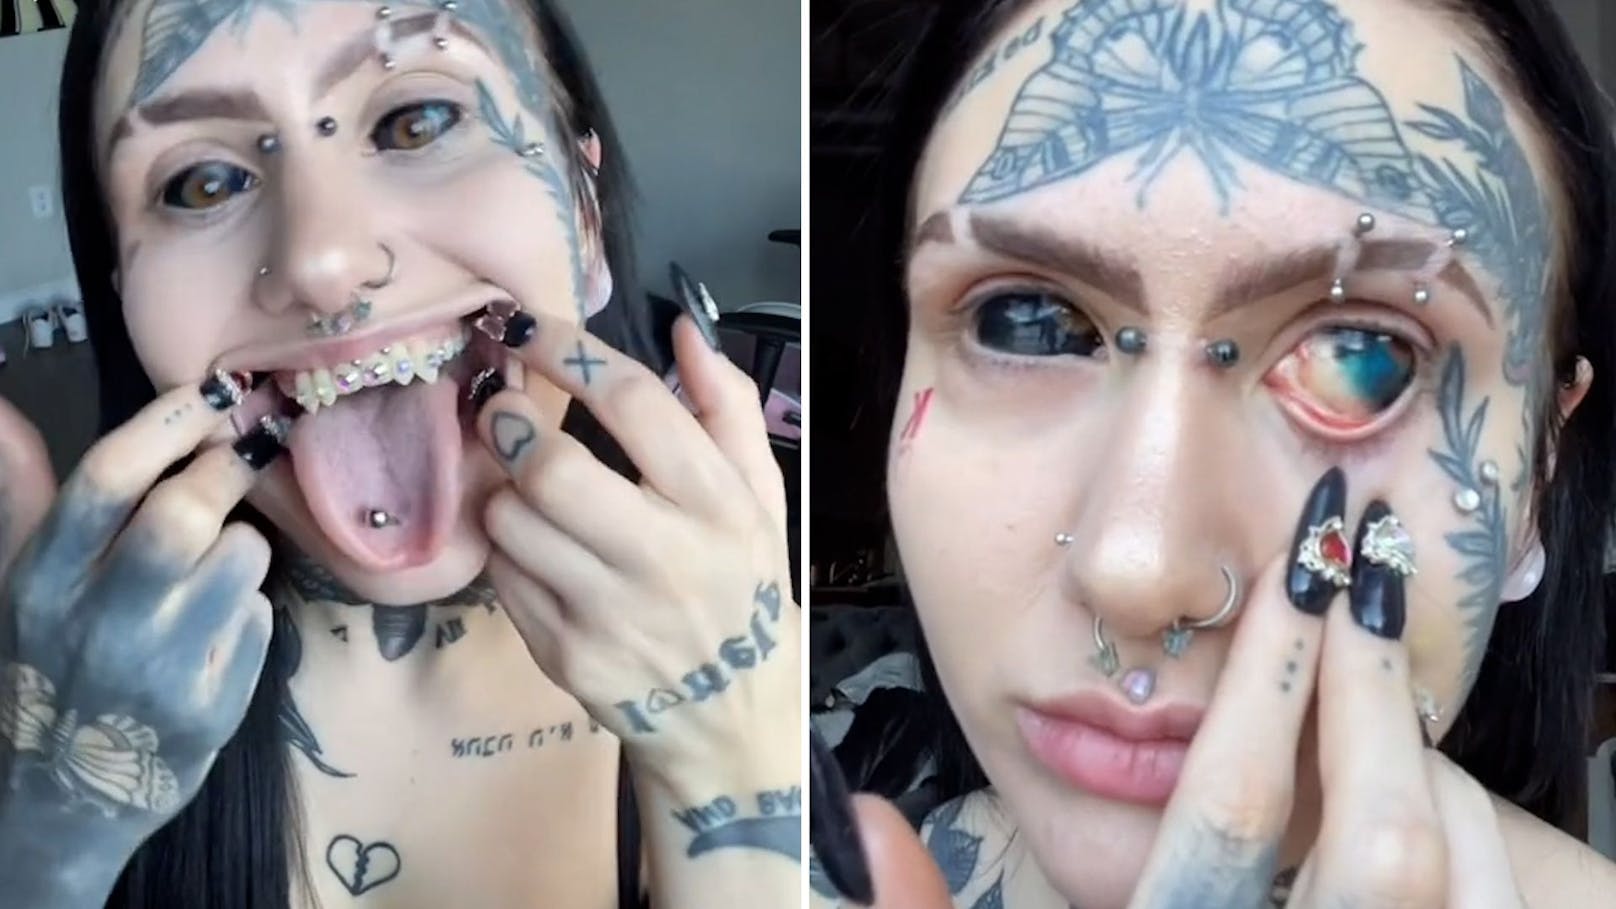 "Dämonen-Frau" schockiert User mit Augapfel-Tattoo